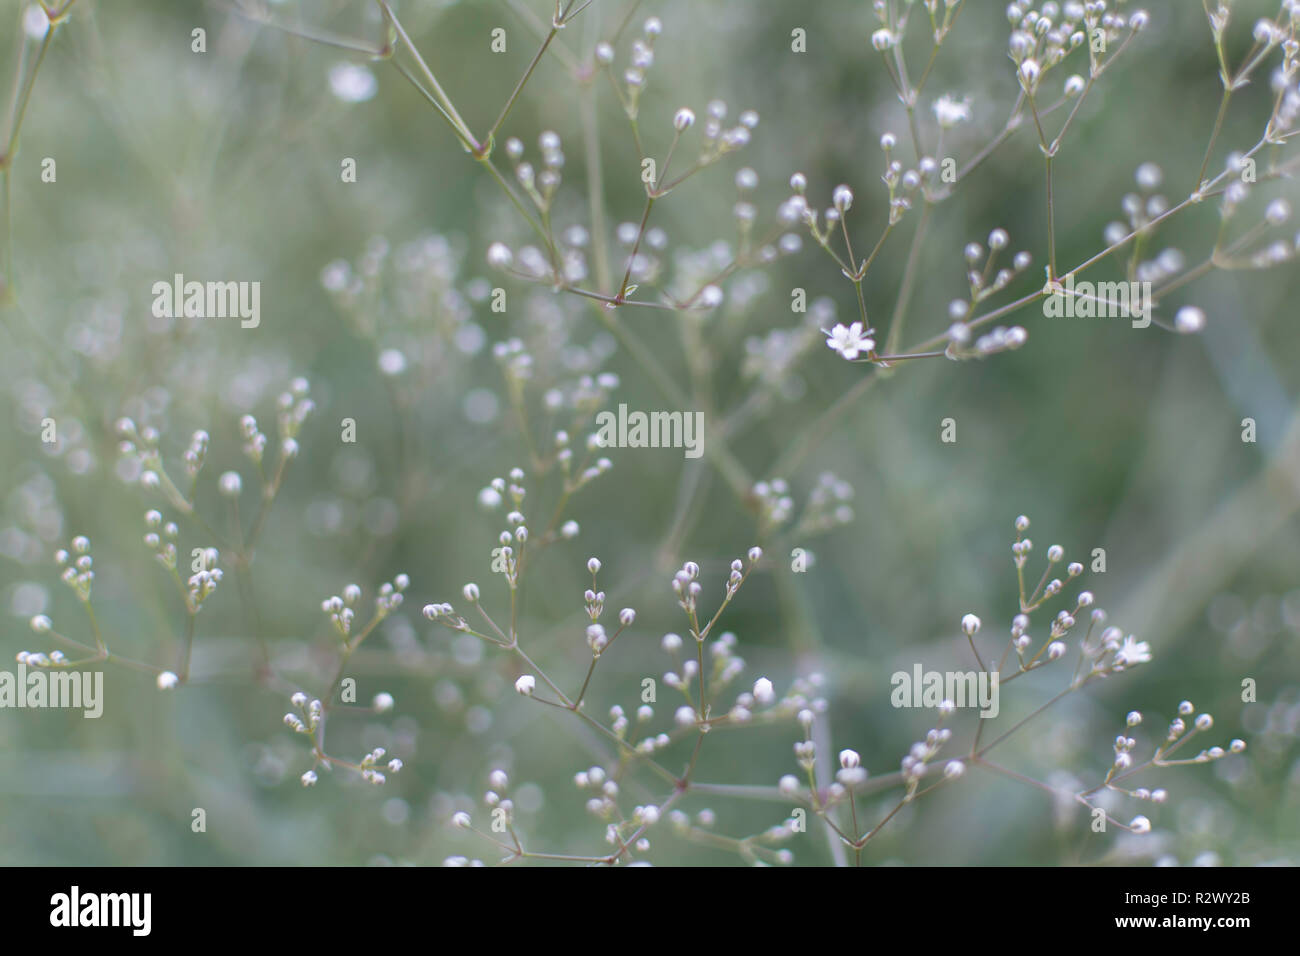 Blurry sanfte Hintergrund mit vielen weißen Baby's Atem (Gypsophila paniculata) Blumen im Garten. Natur Hintergrund mit gemeinsamen Gypsophila. Stockfoto